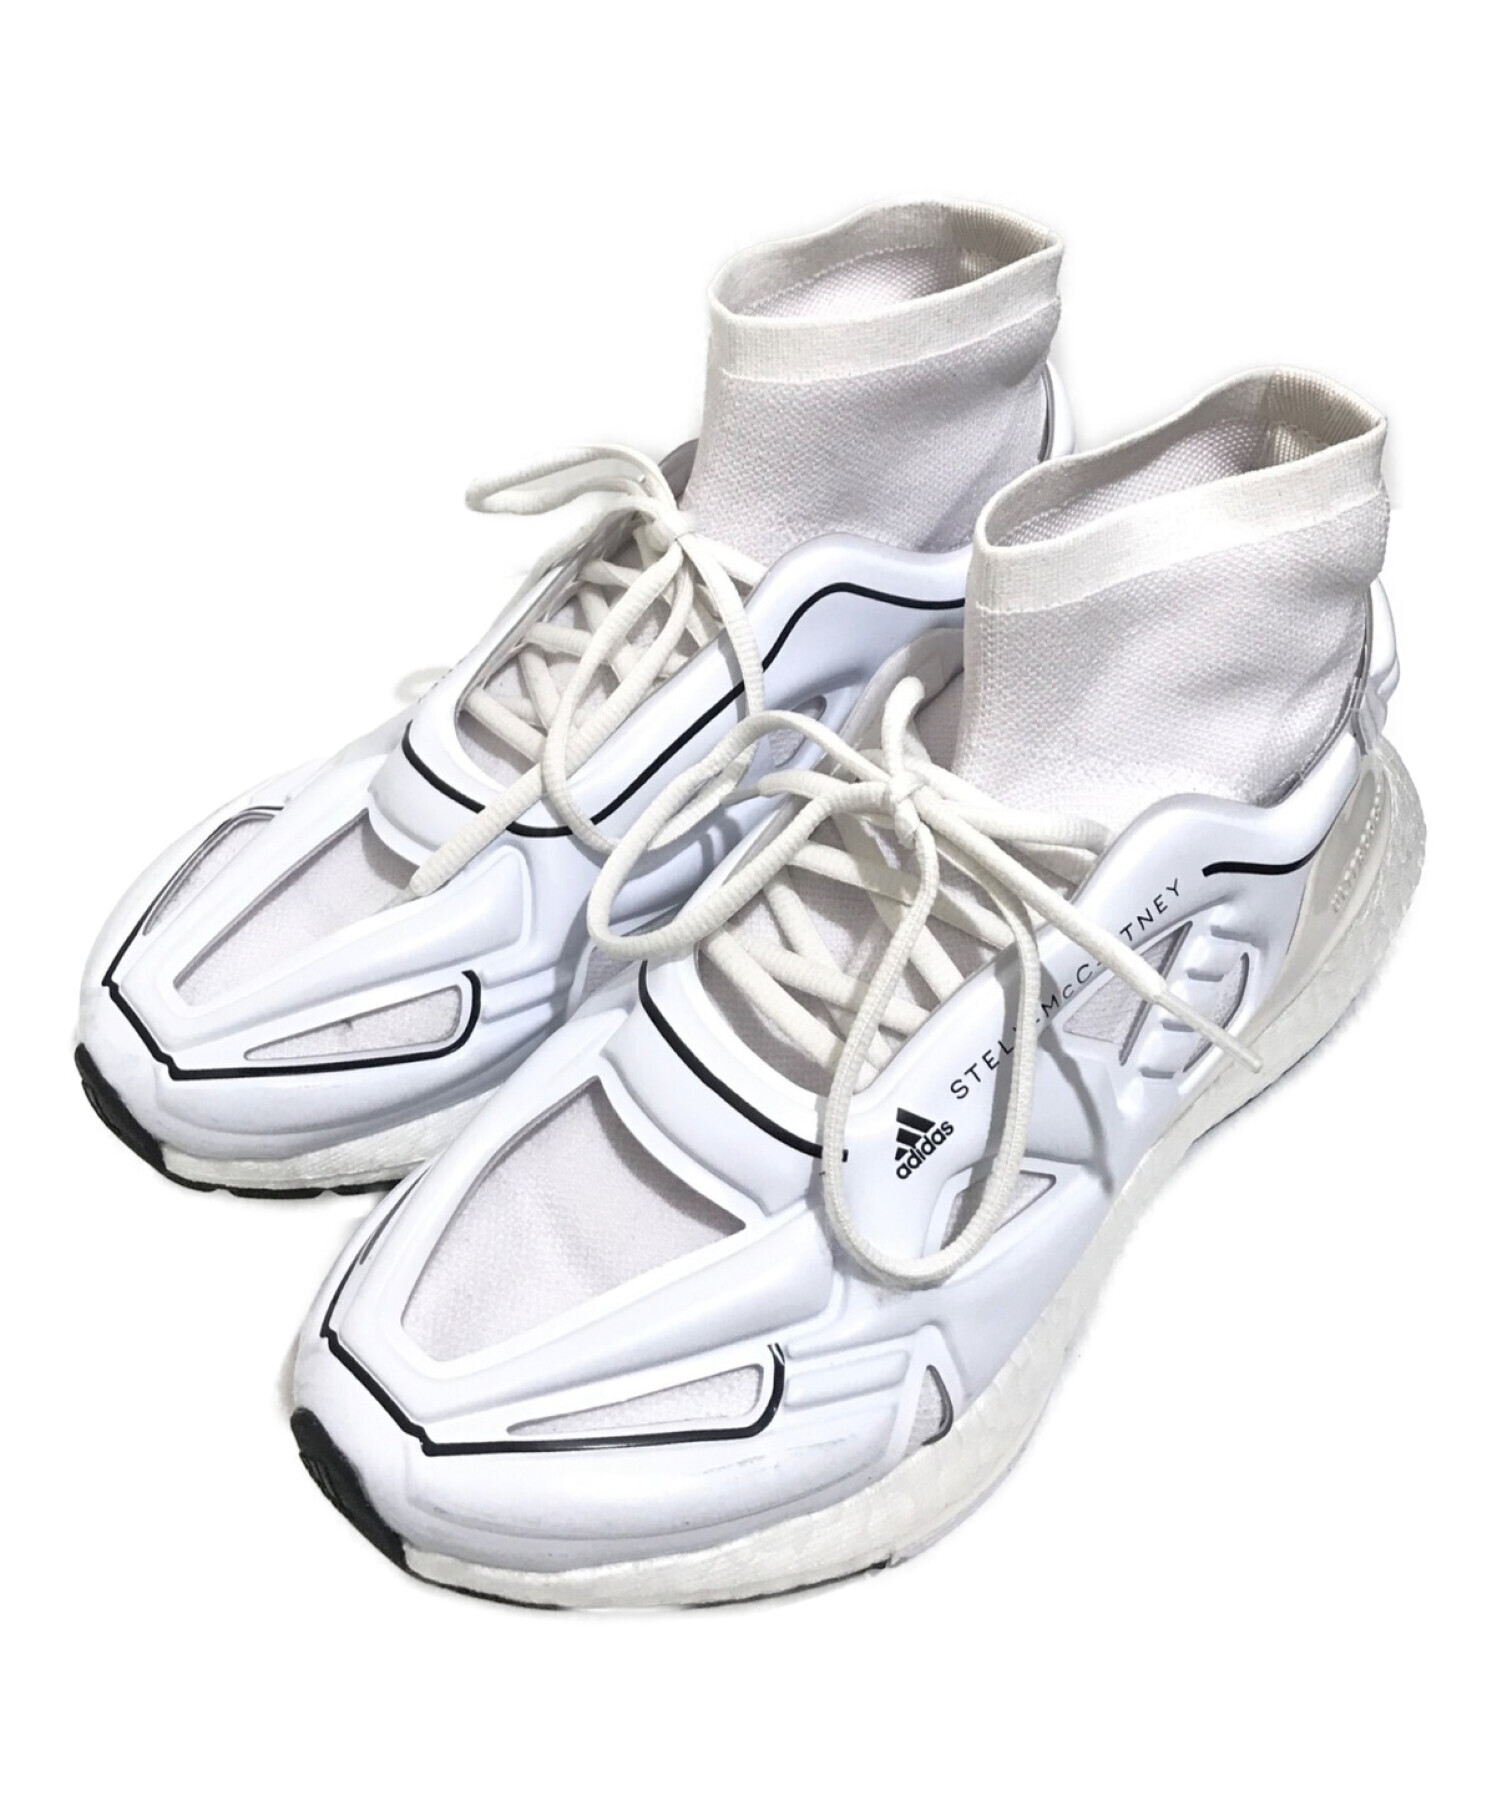 adidas (アディダス) STELLA McCARTNEY (ステラマッカートニー) ハイカットスニーカー ホワイト サイズ:26